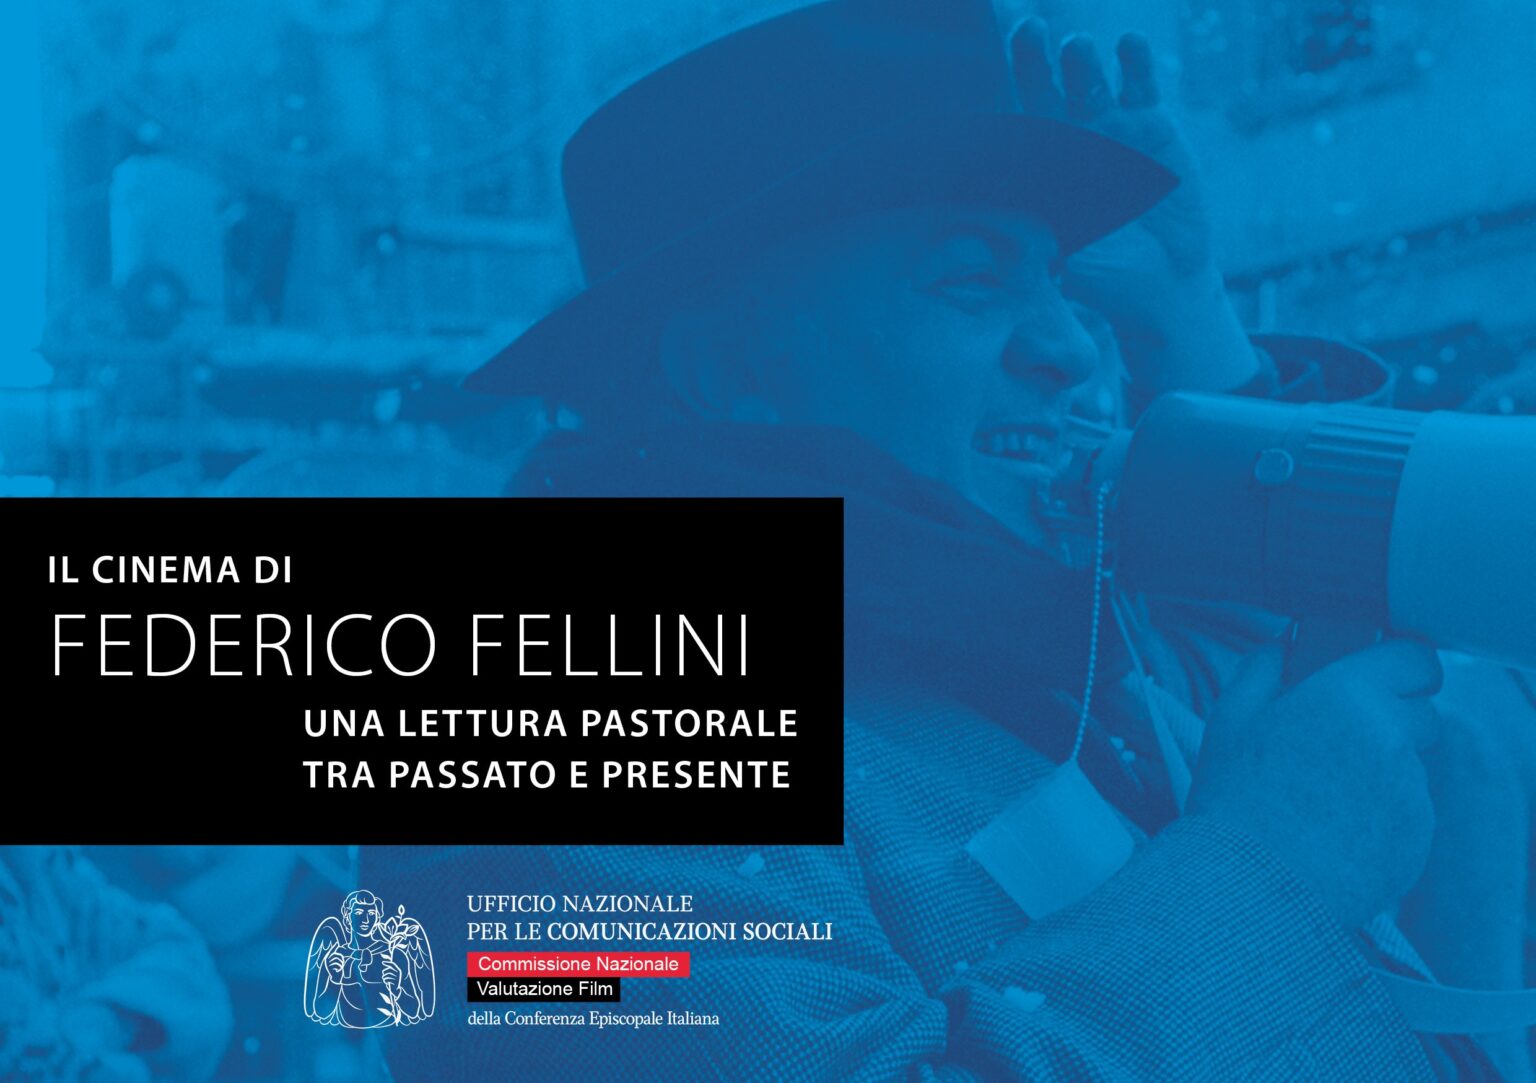 Il cinema di Fellini, ebook gratuito